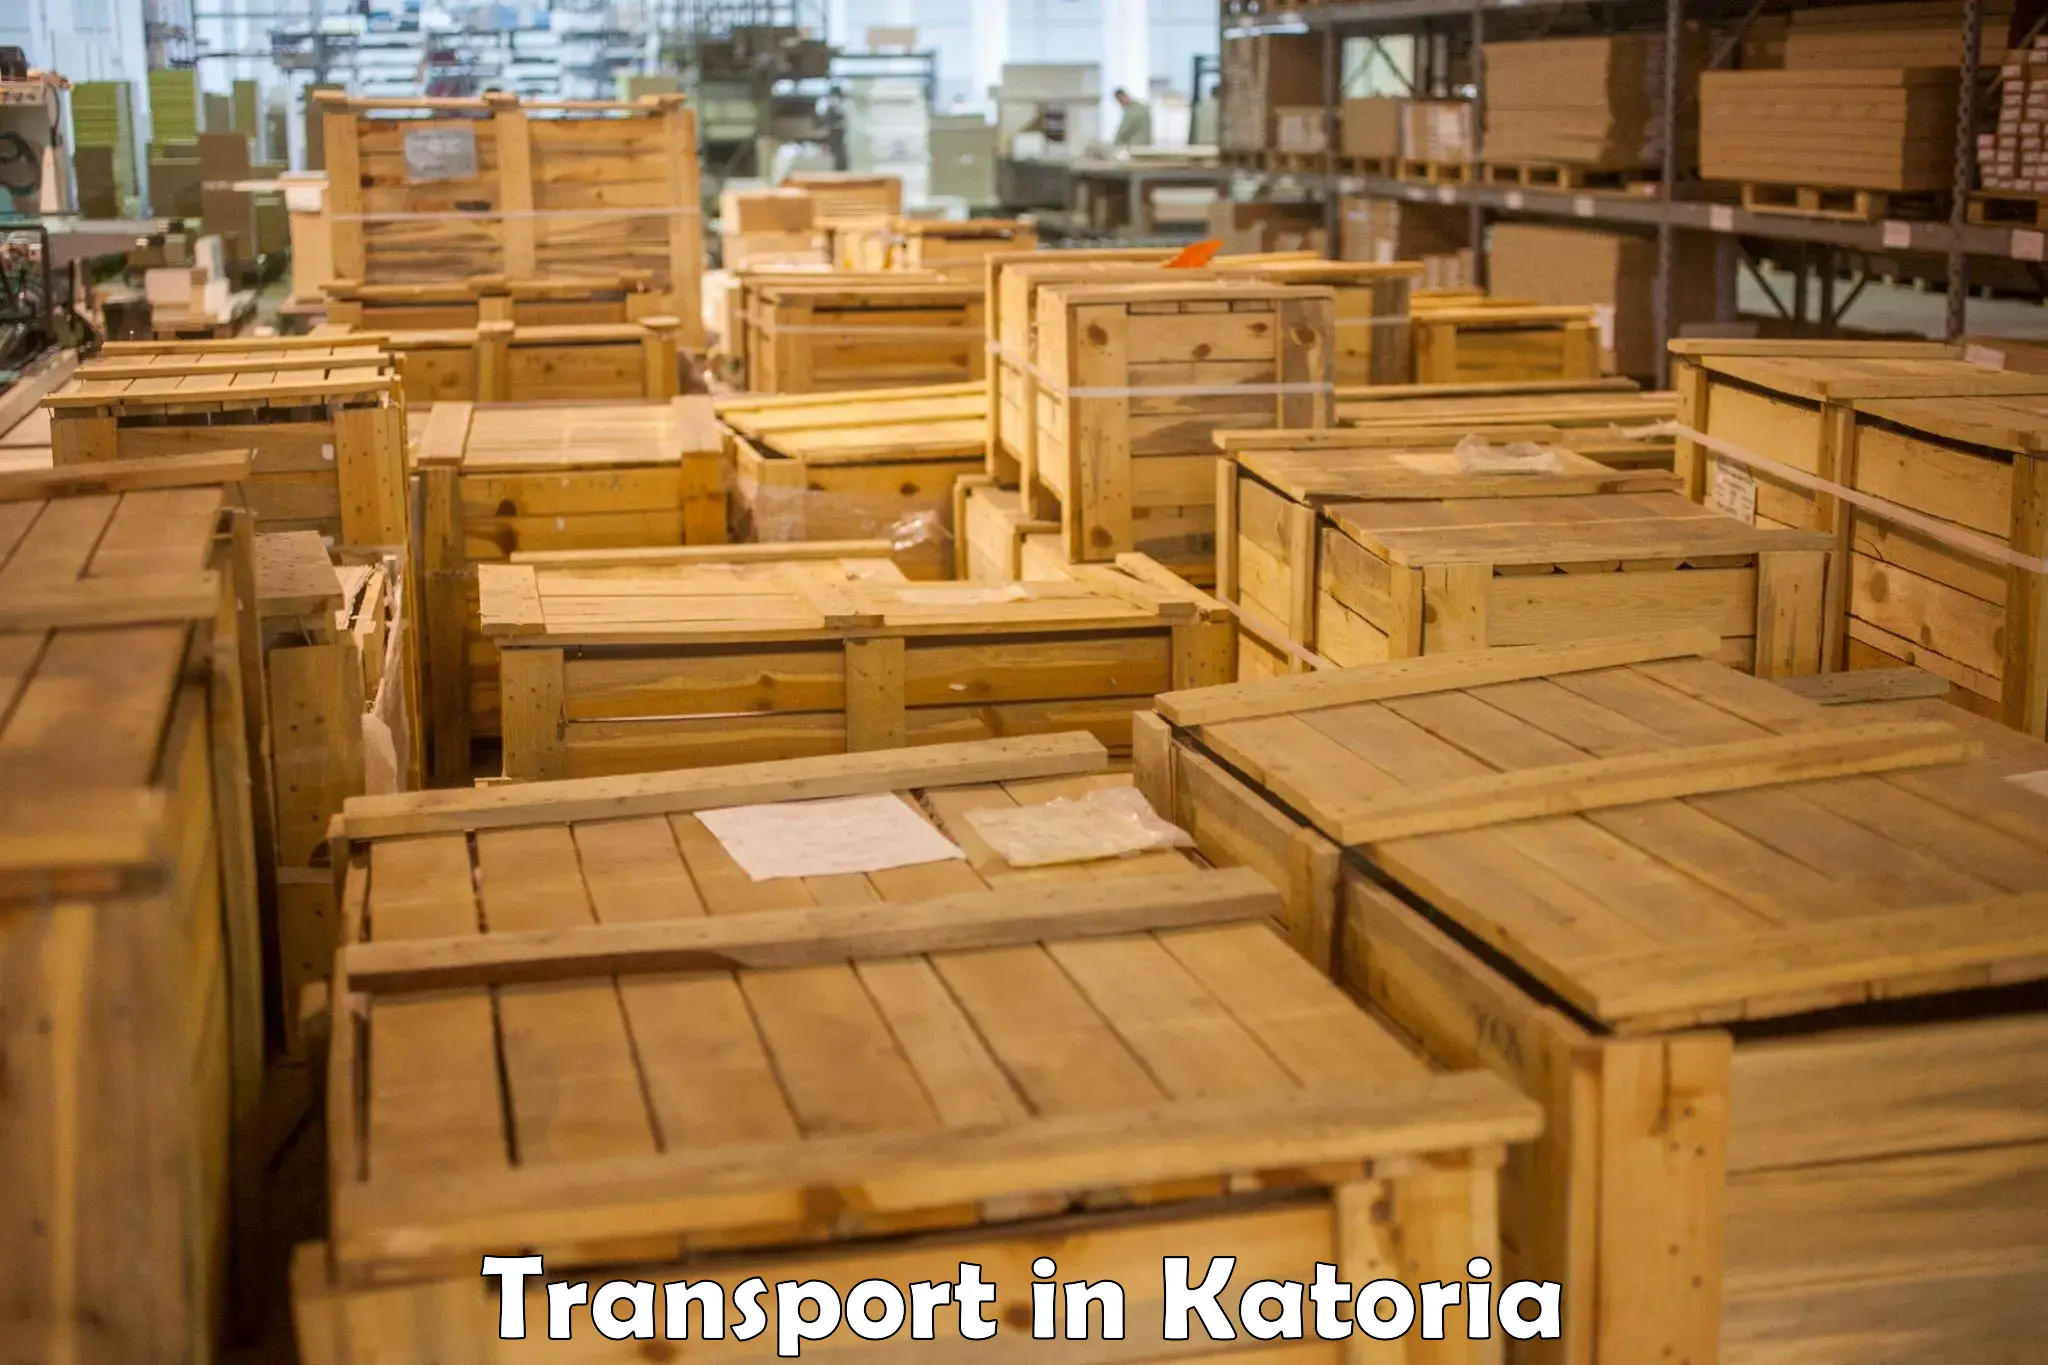 Delivery service in Katoria